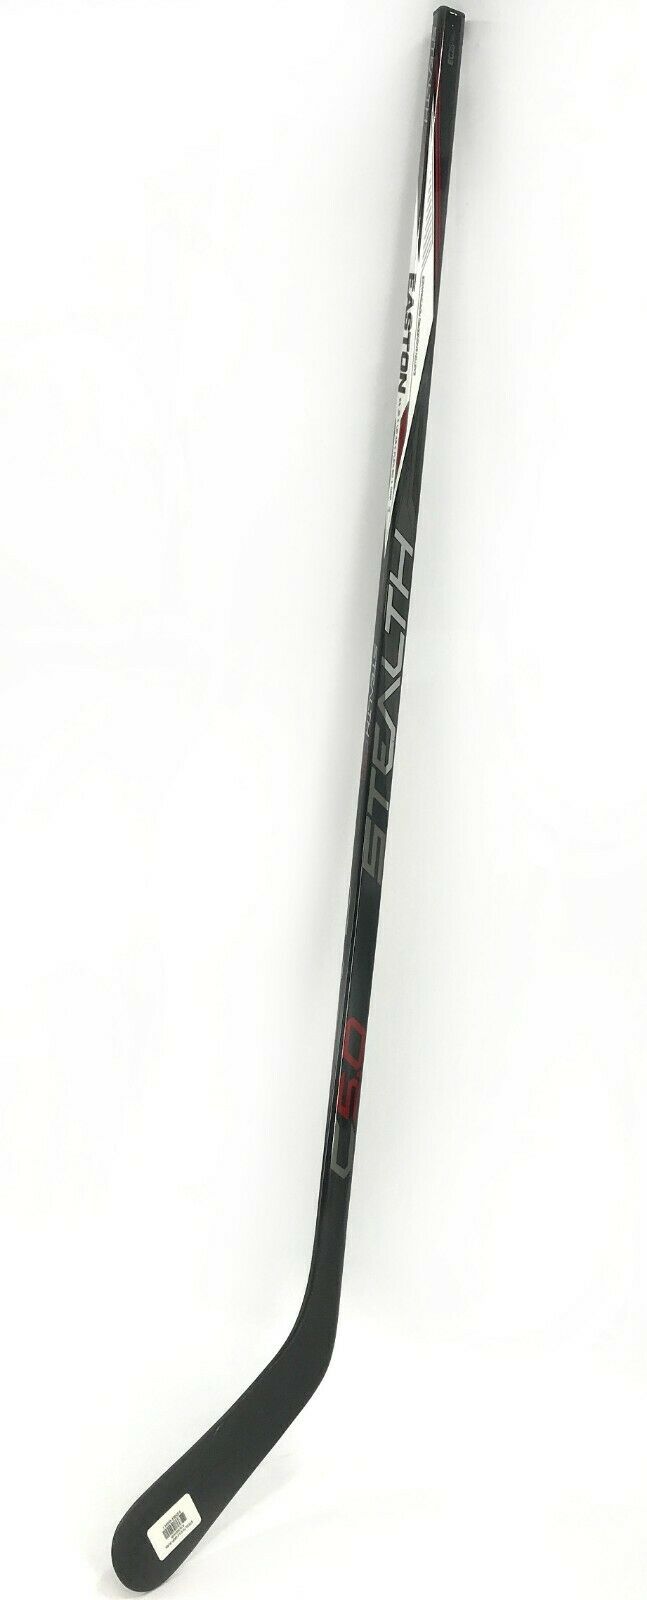 Easton Stealth C5.0 Junior Ice Hockey Stick - FLEX 50 / LIE 4.5 - RH #Z28